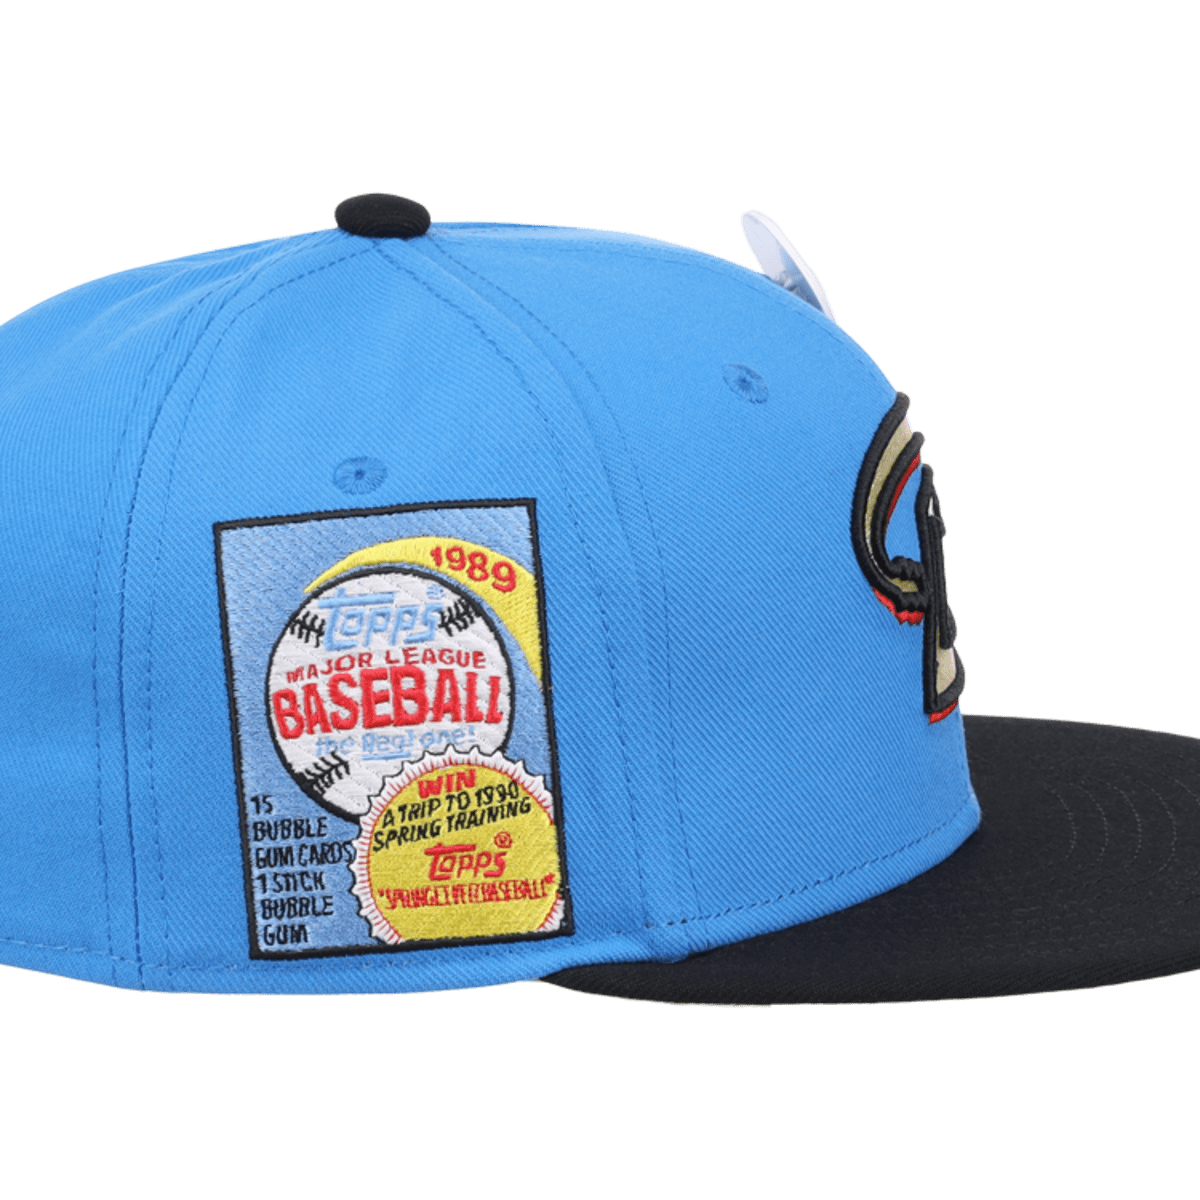 Top Minor League Baseball hats of 2021